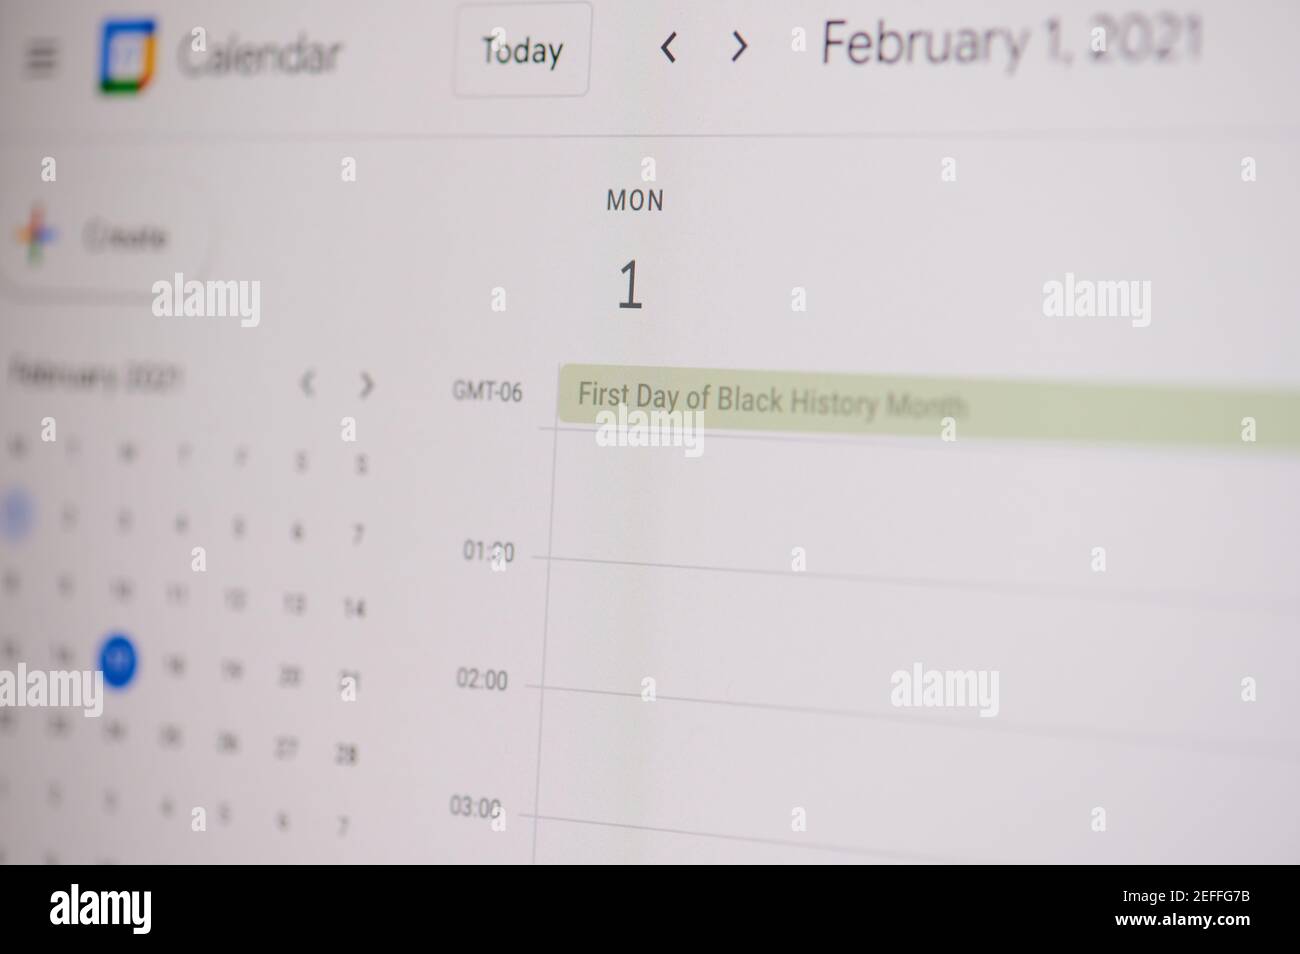 Nueva york, EE.UU. - 17 de febrero de 2021: Primer día de la historia negra 1 de febrero en Google calendario en la pantalla del ordenador portátil de cerca de la vista. Foto de stock